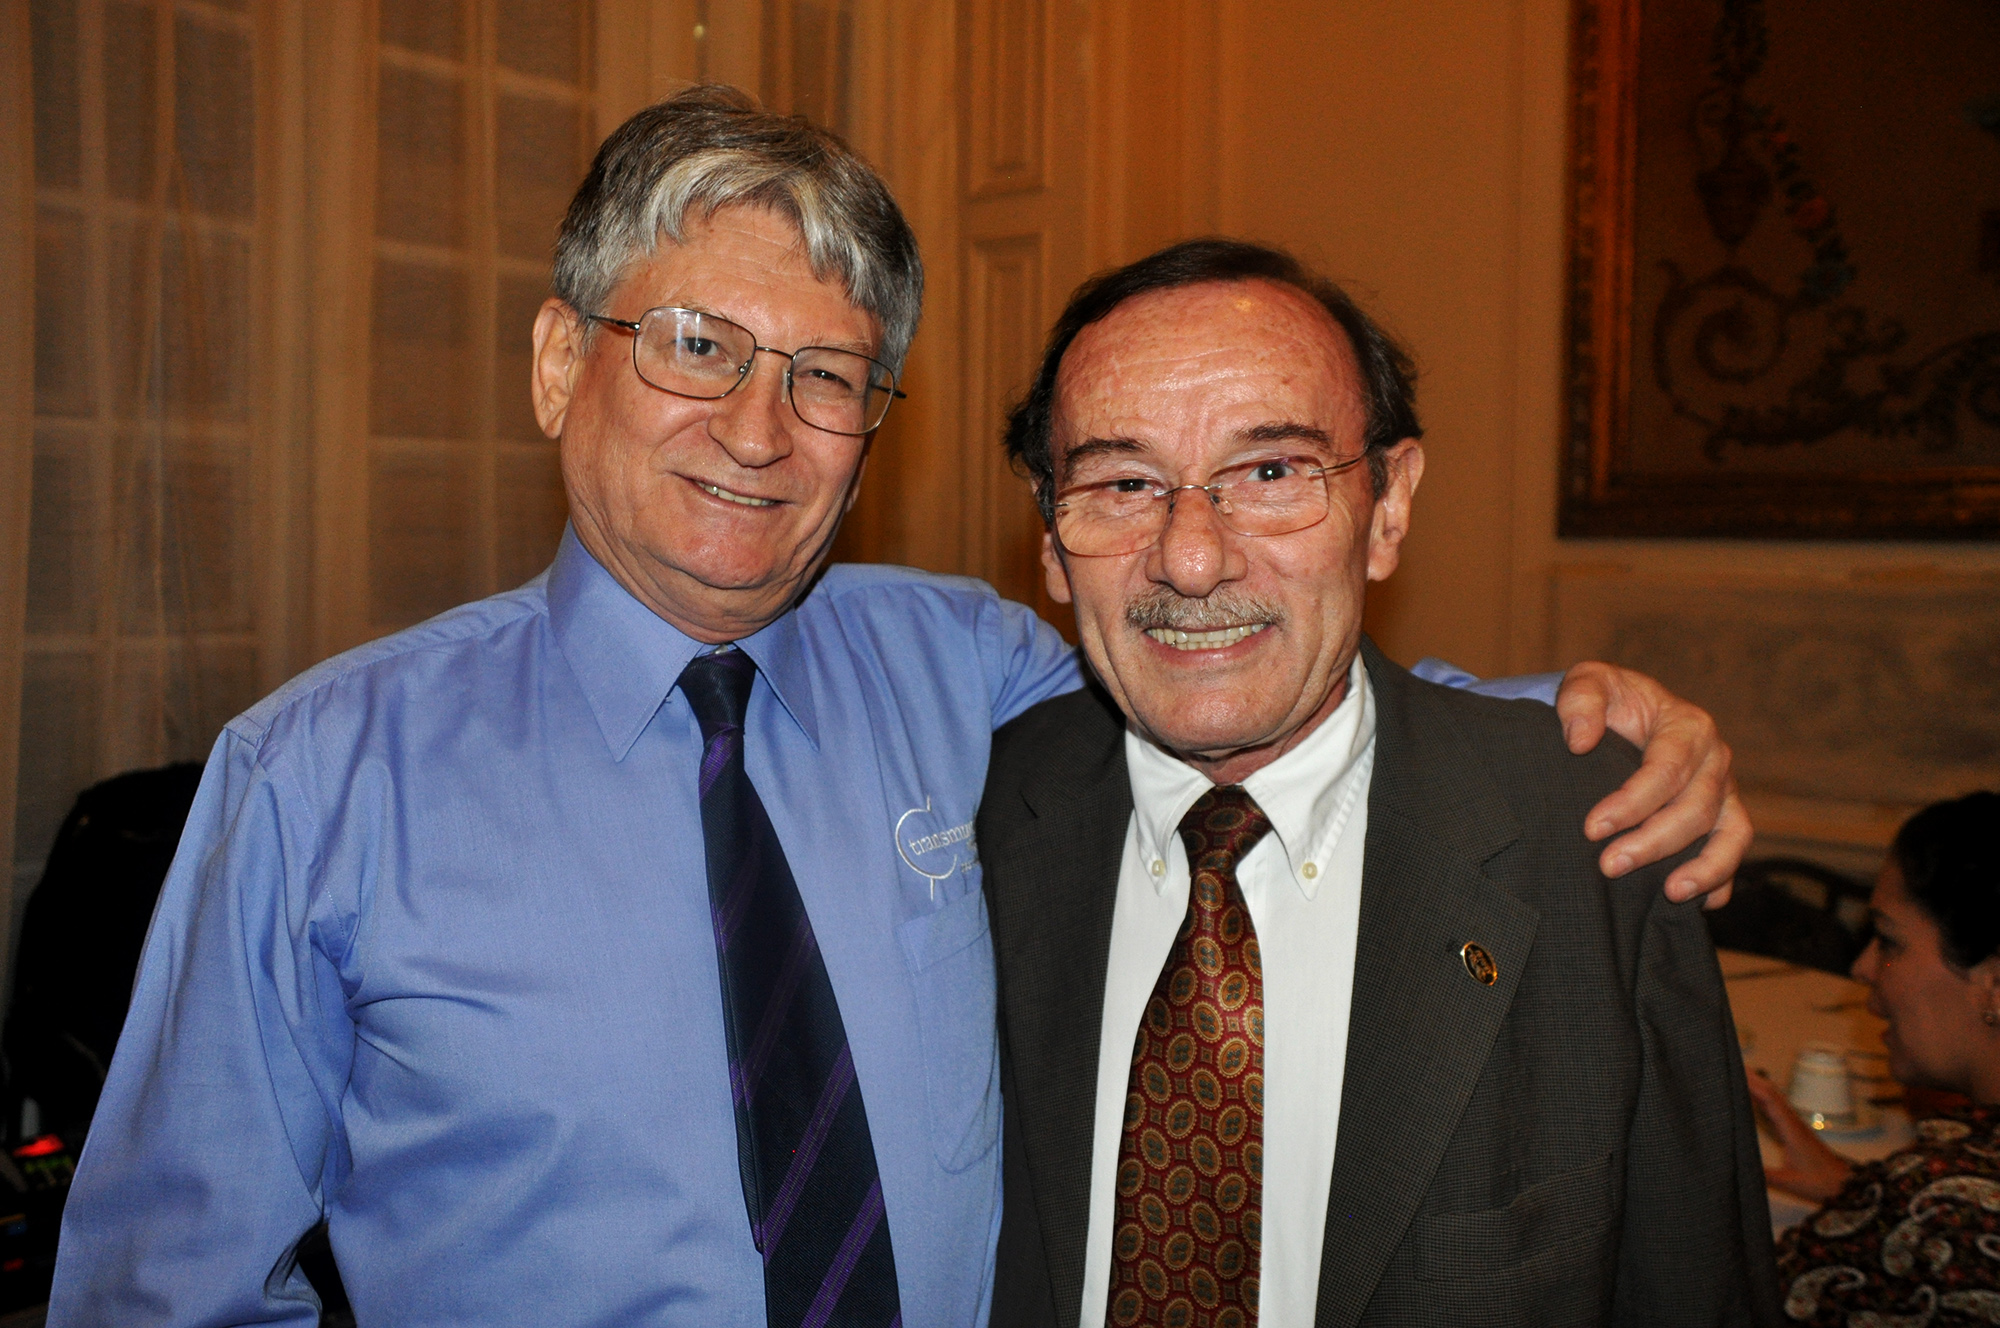 Miguel Andrade, diretor da Transmundi, e George Irmes, da ABAV-RJ